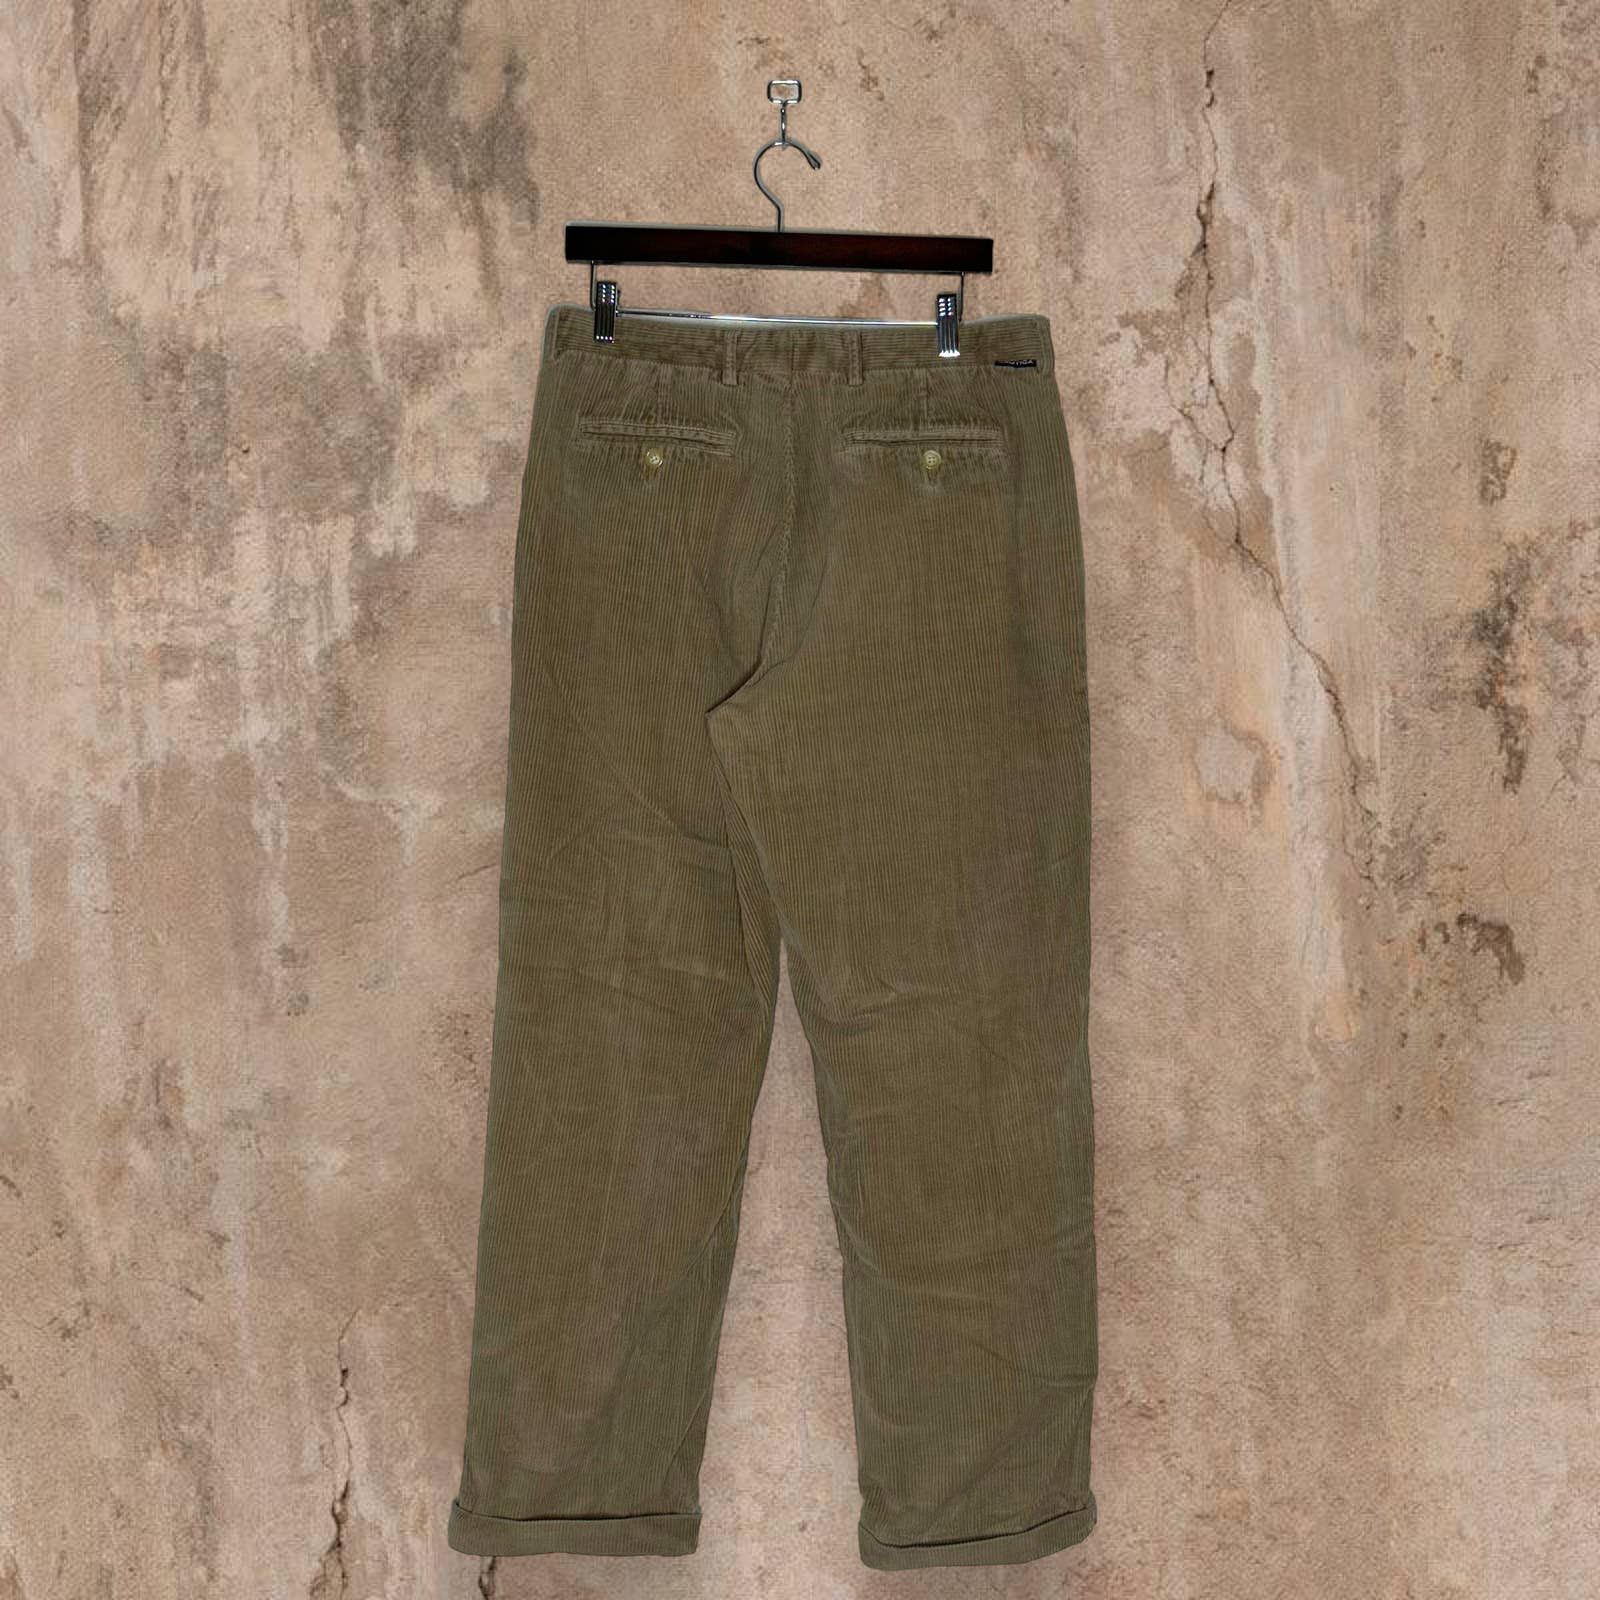 Vintage Vintage Nautica Corduroy Pants Tan Pleated Baggy Fit Y2K Size US 34 / EU 50 - 1 Preview